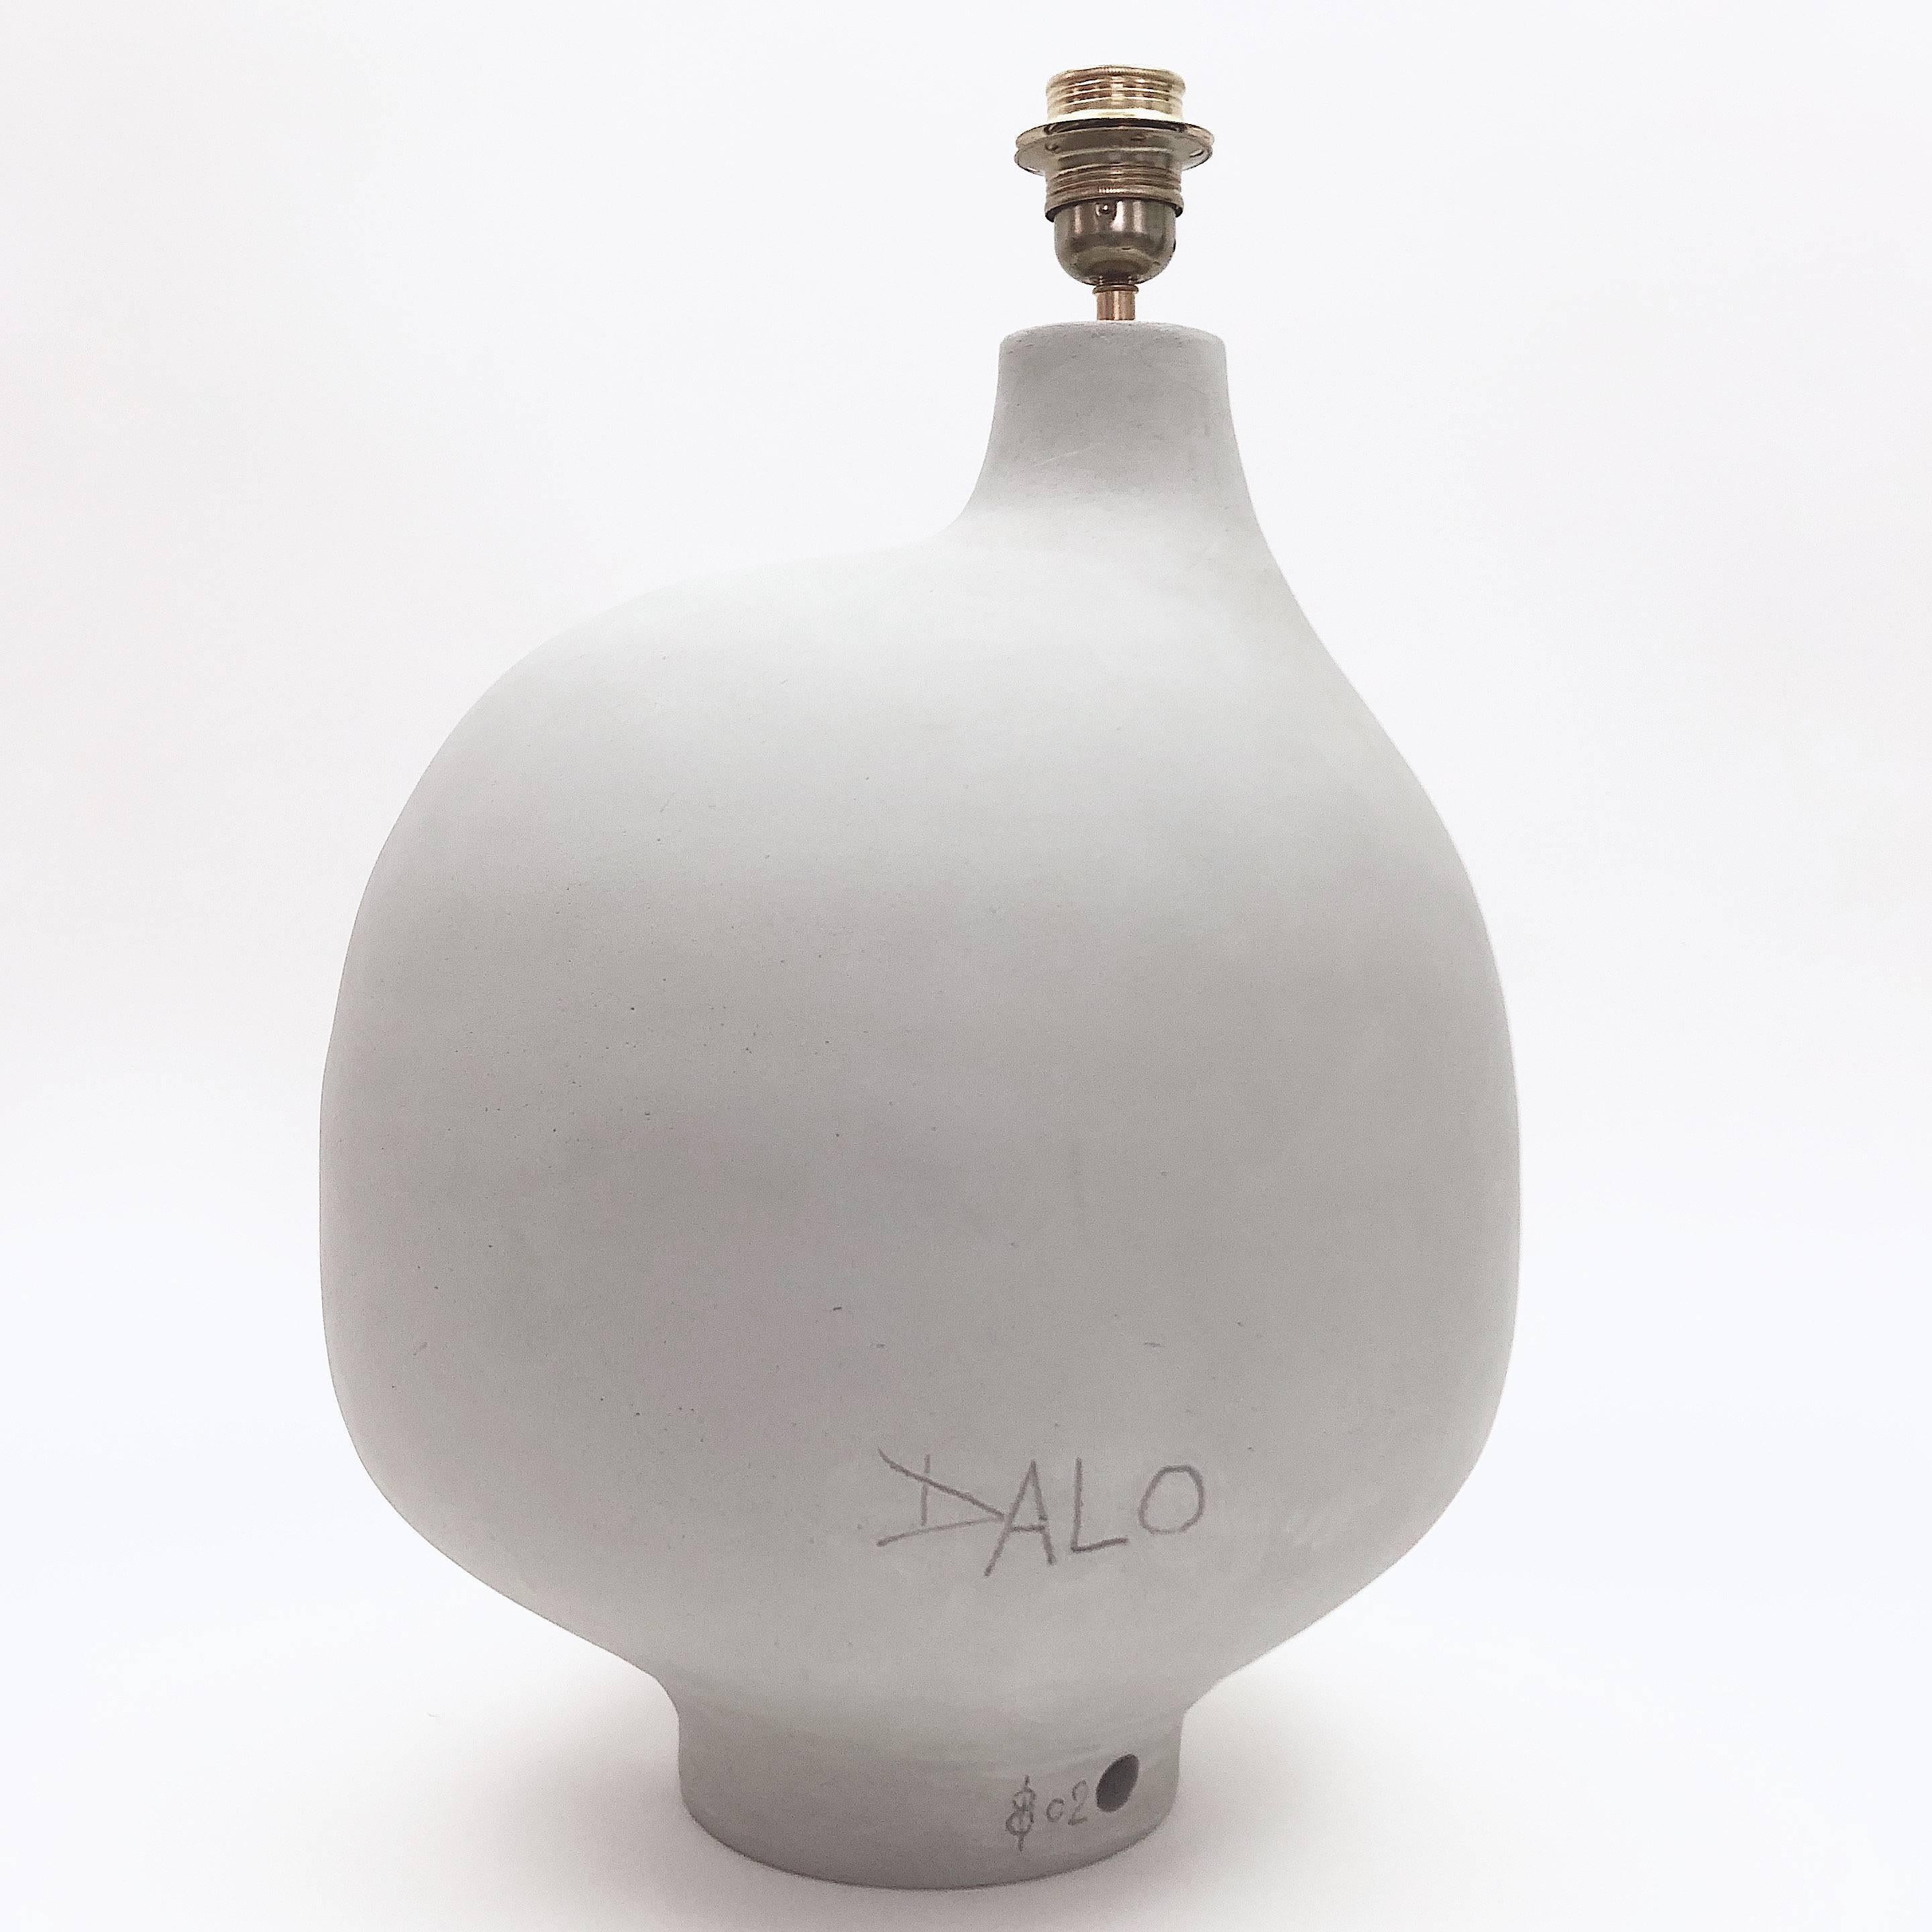 Enameled Dalo Ceramic Lamp Base Glazed in Grey